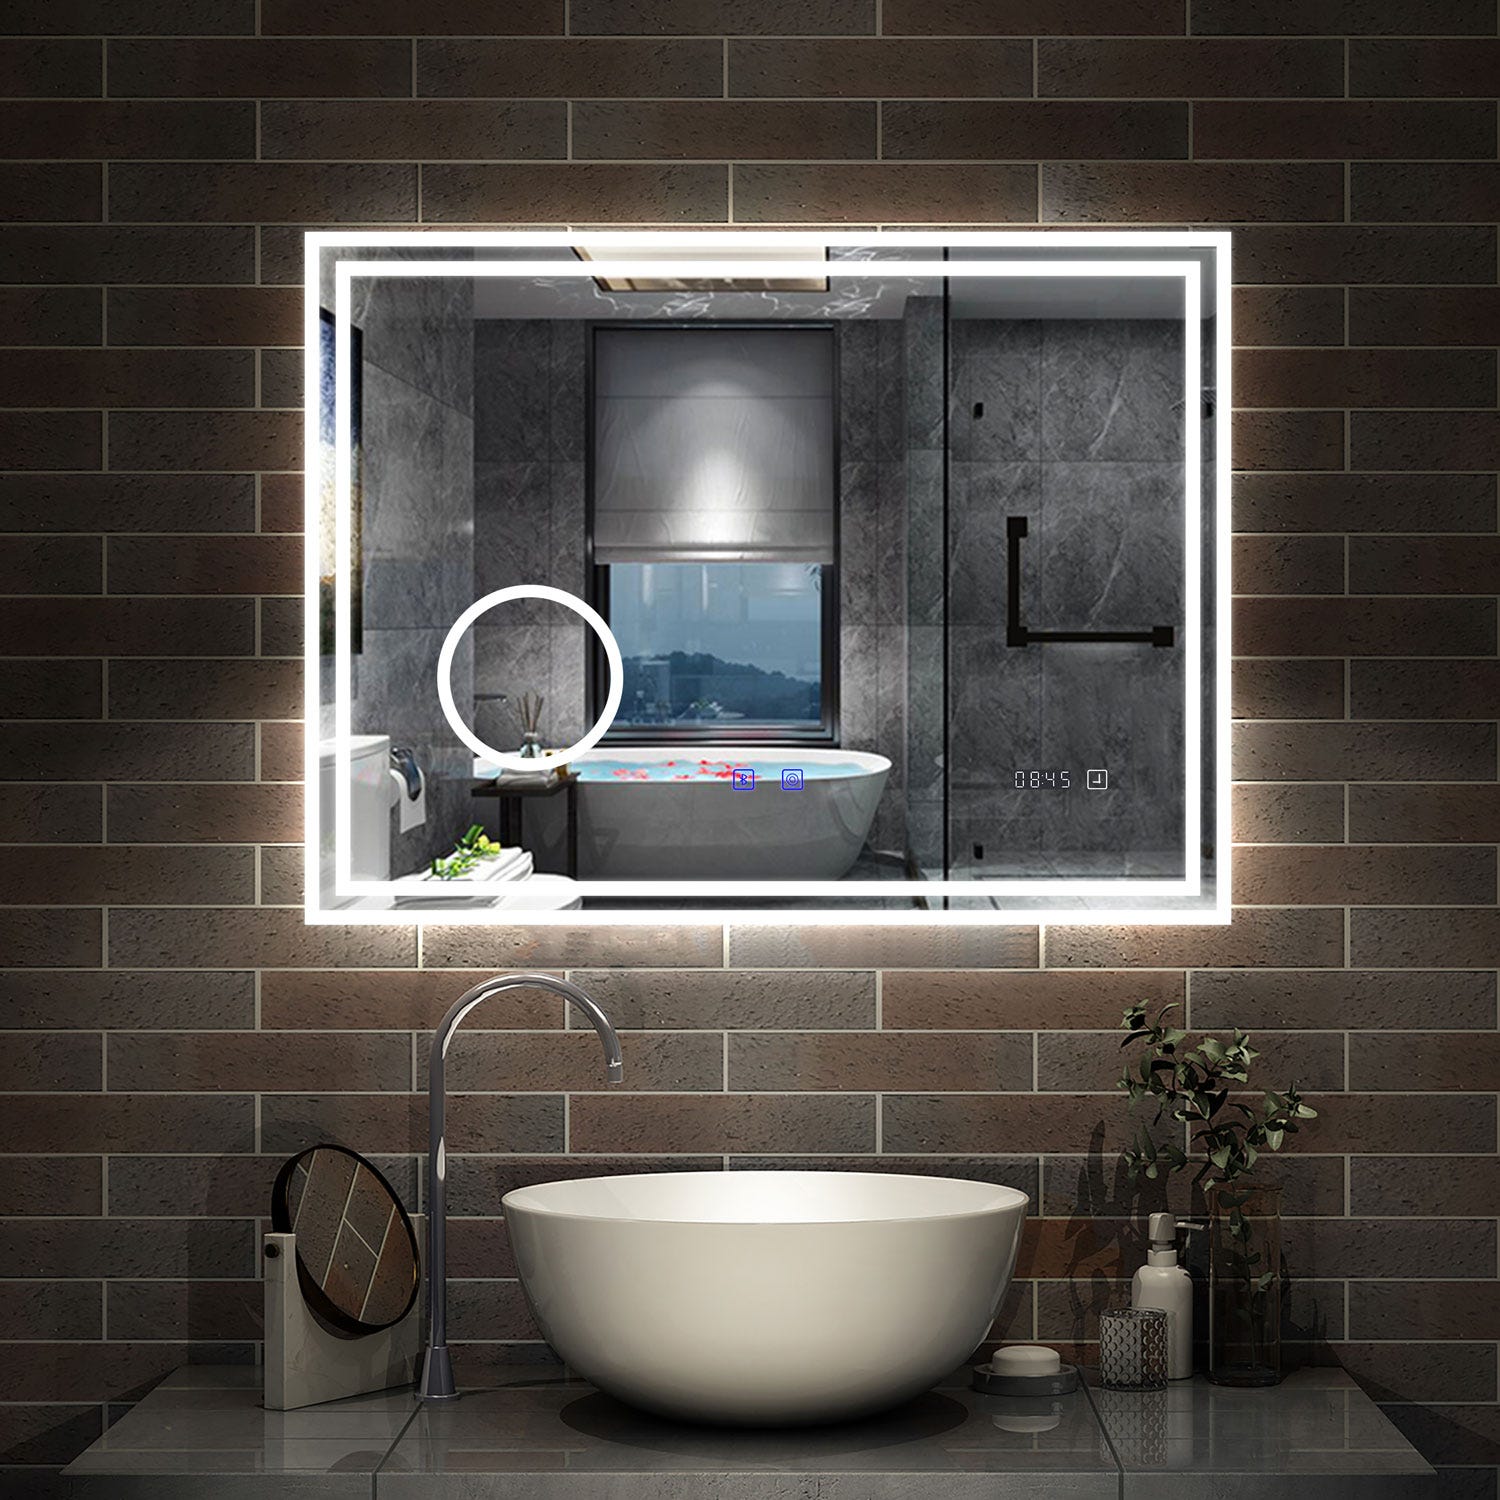 AICA LED miroir 140x80cm horloge + bluetooth + miroir grossissant + tricolore + tactile + anti-buée, suspendu horizontalement ,miroir salle de bain 0